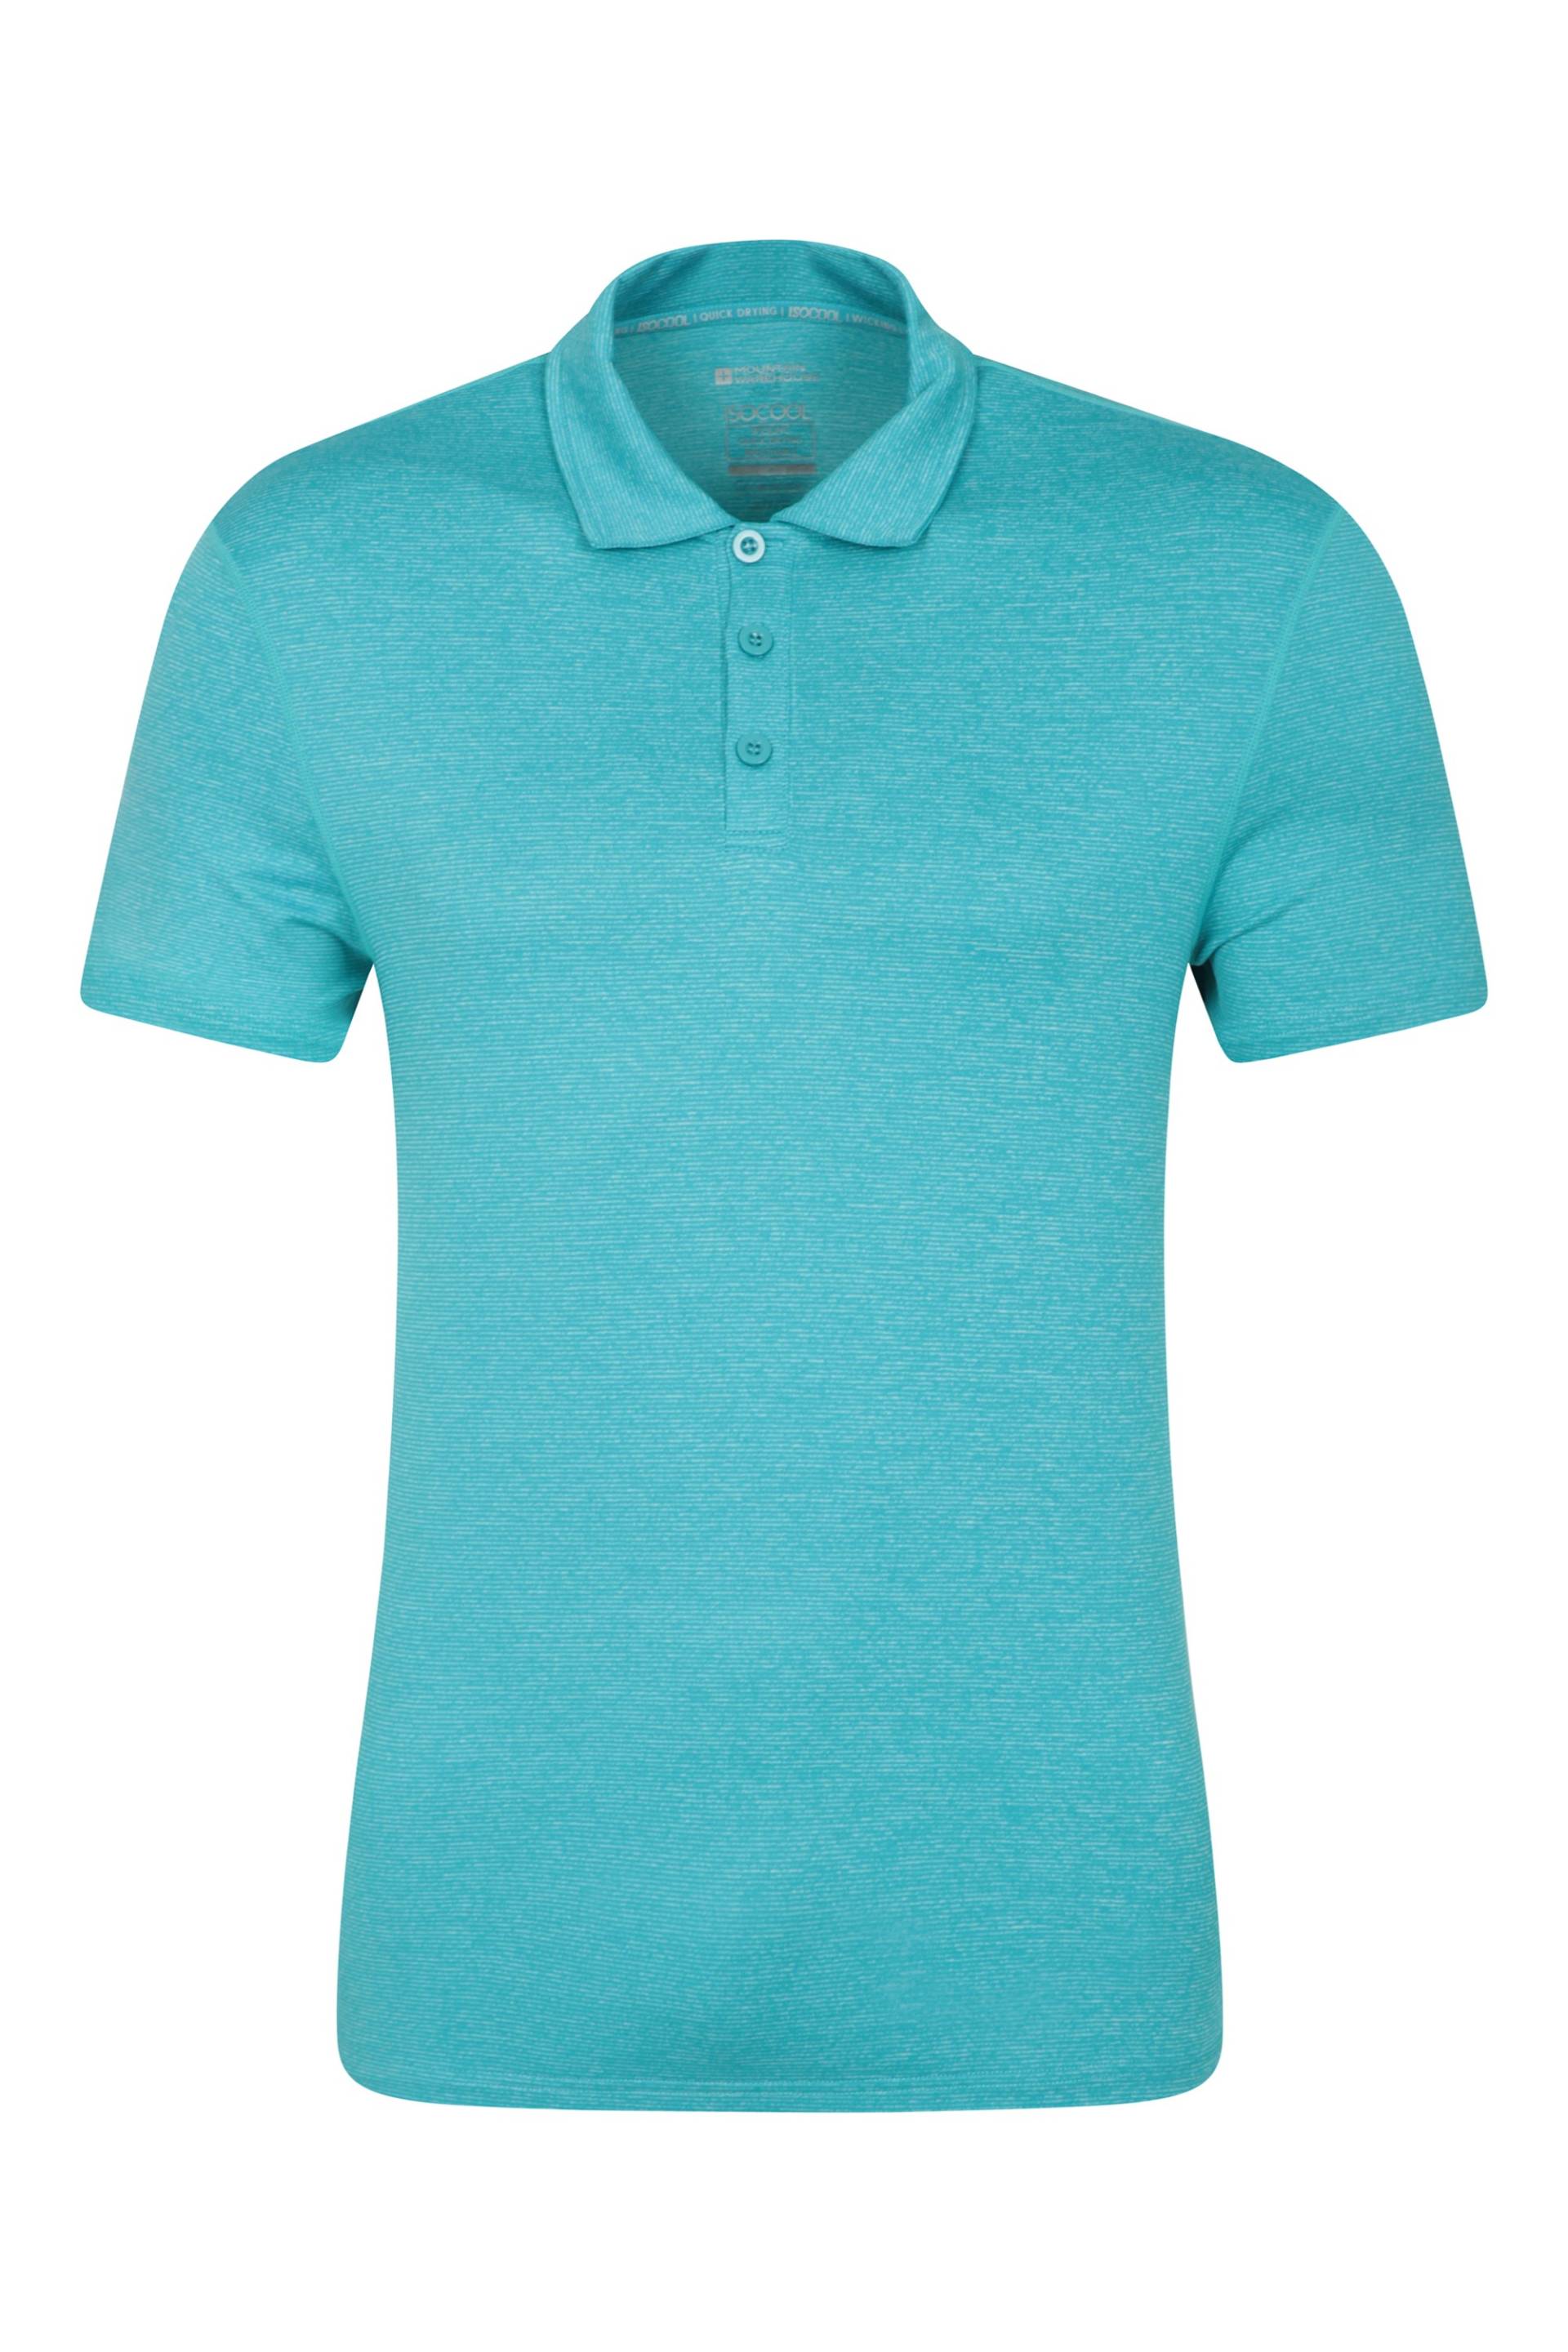 Agra Stripe Herren Polo T-Shirt  - Blau von Mountain Warehouse